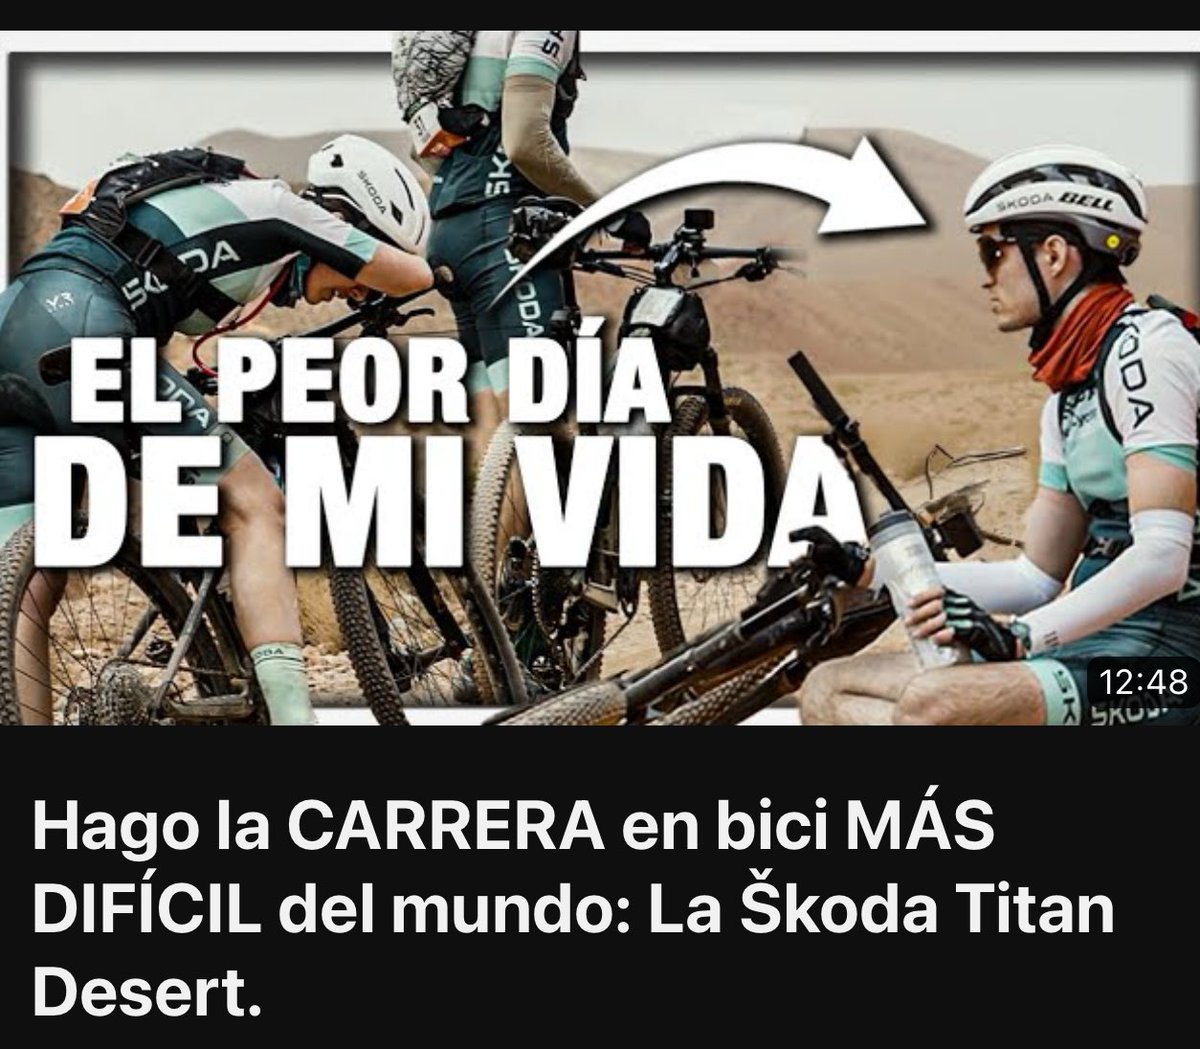 Nuevo reportaje ✨✨ Hago la CARRERA en bici MÁS DIFÍCIL del mundo: La Škoda Titan Desert. 🔗 youtu.be/MsVbzVxfiEI